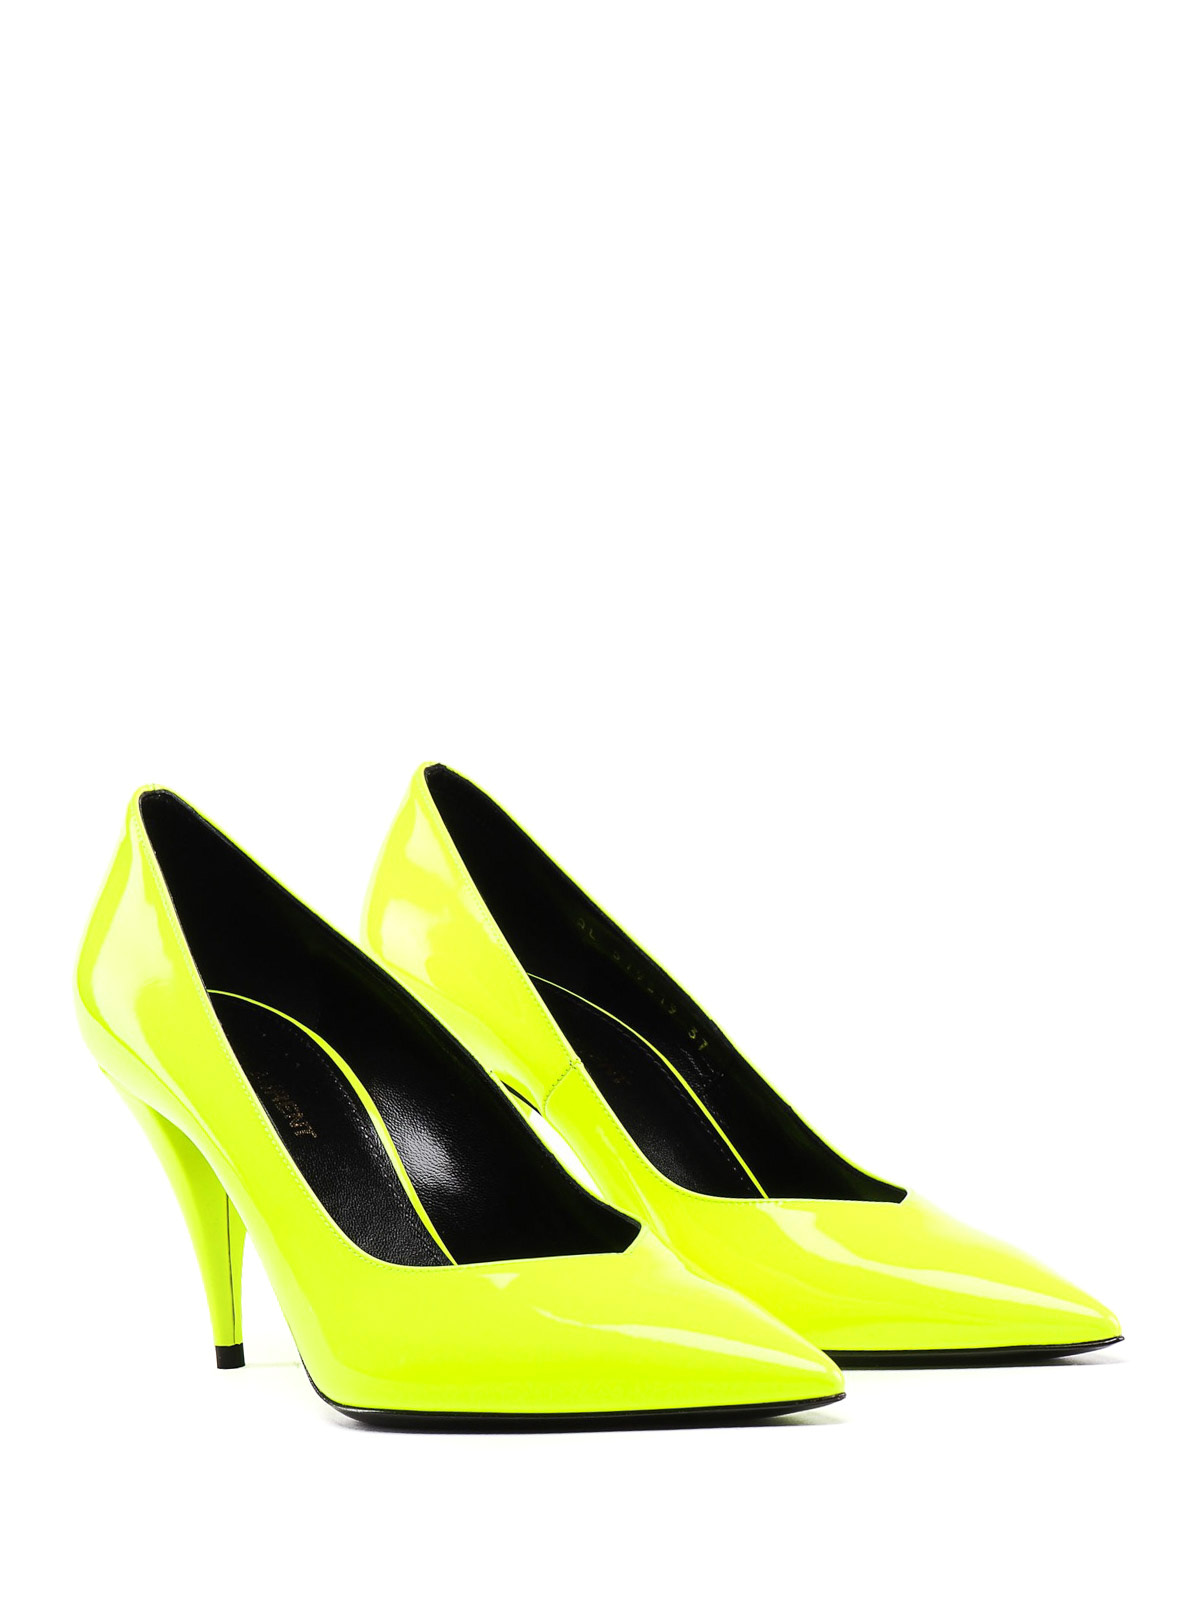 neon yellow stilettos